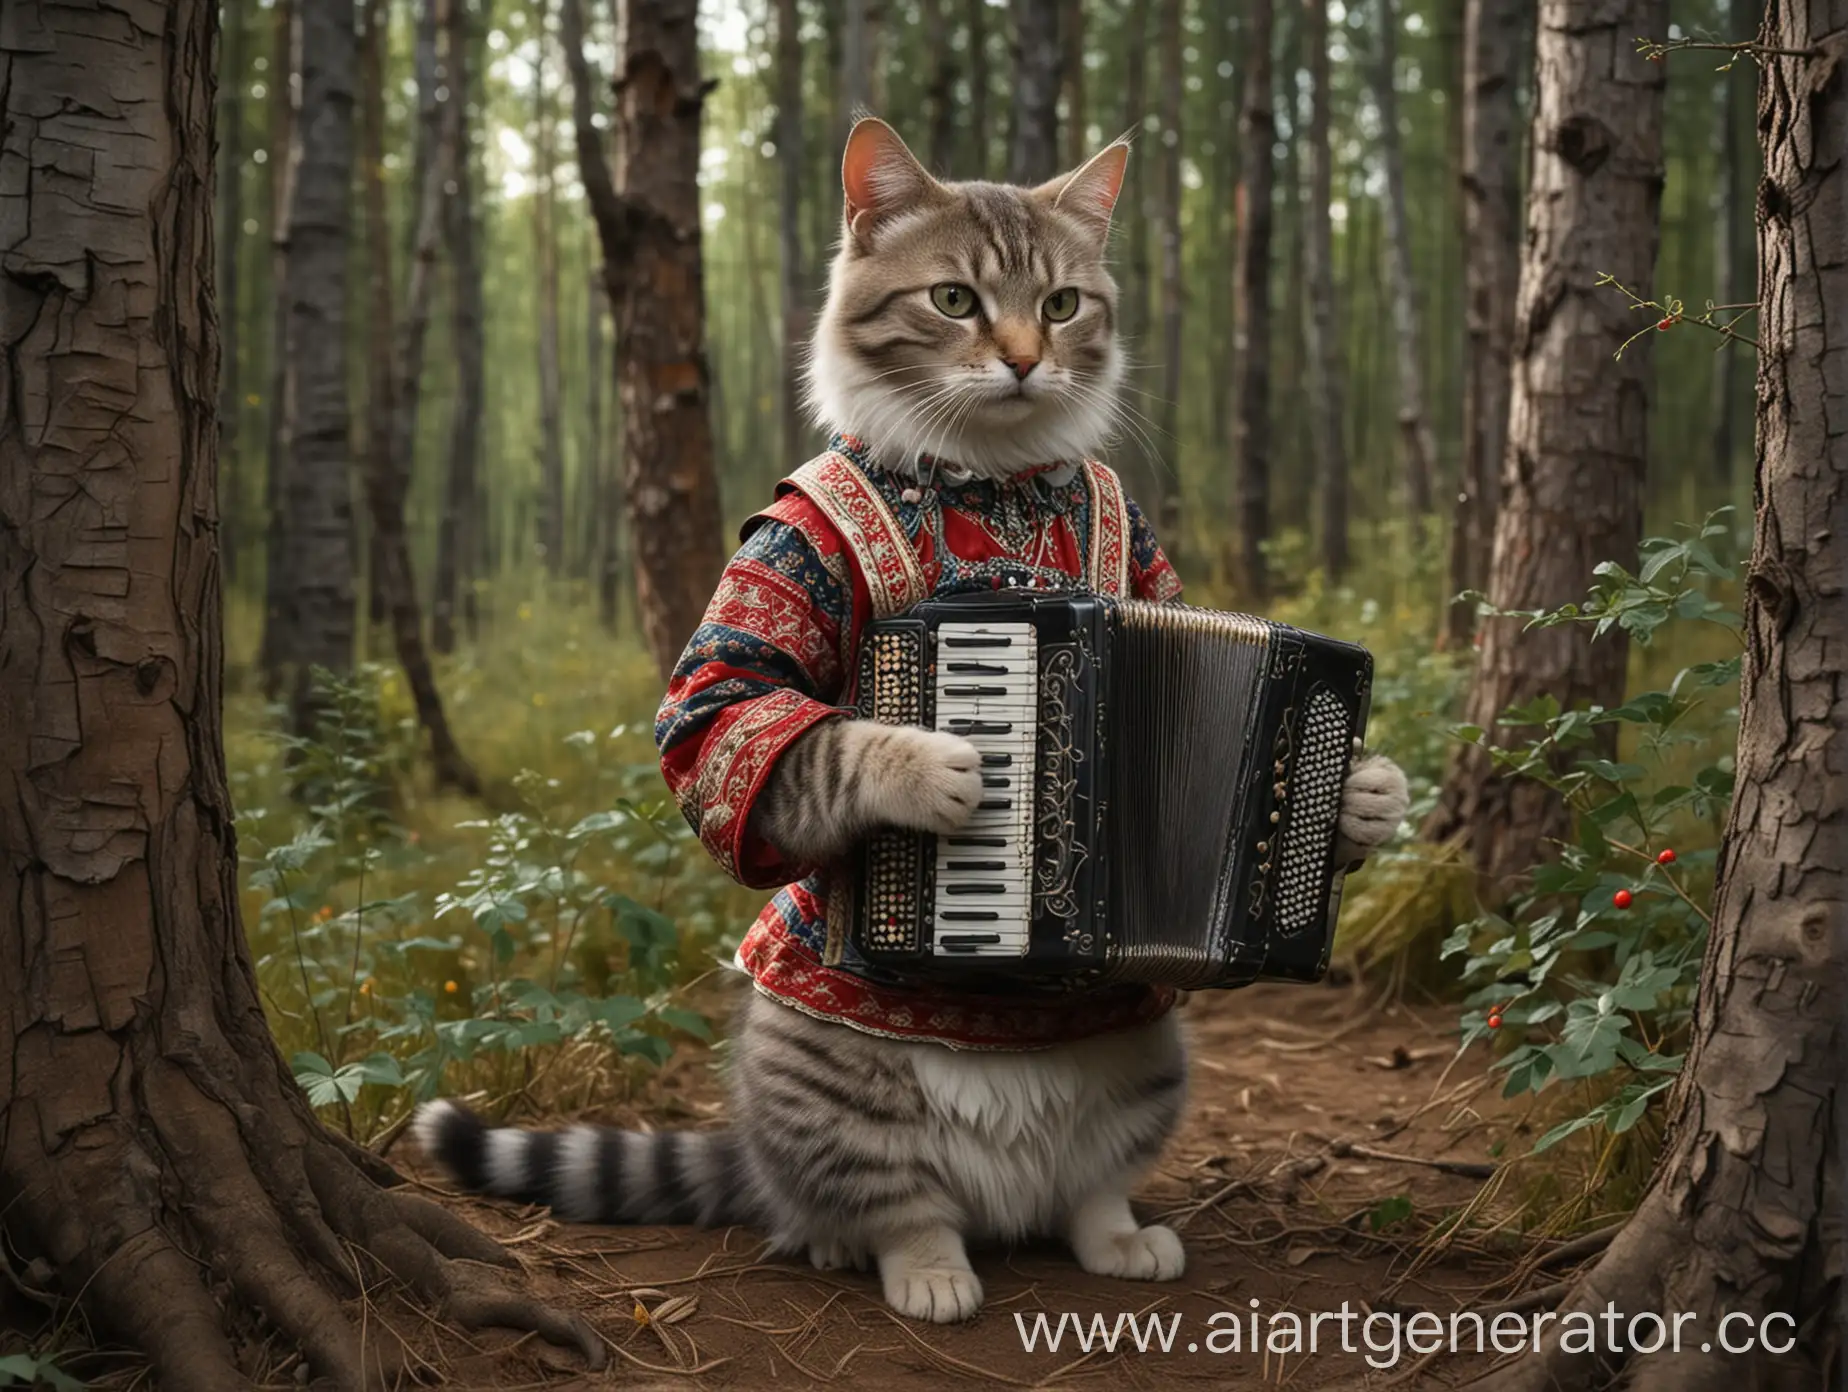 Дуб сказочный, под дубом кот в русской народной одежде играет на баяне, русская народная сказка, лес,